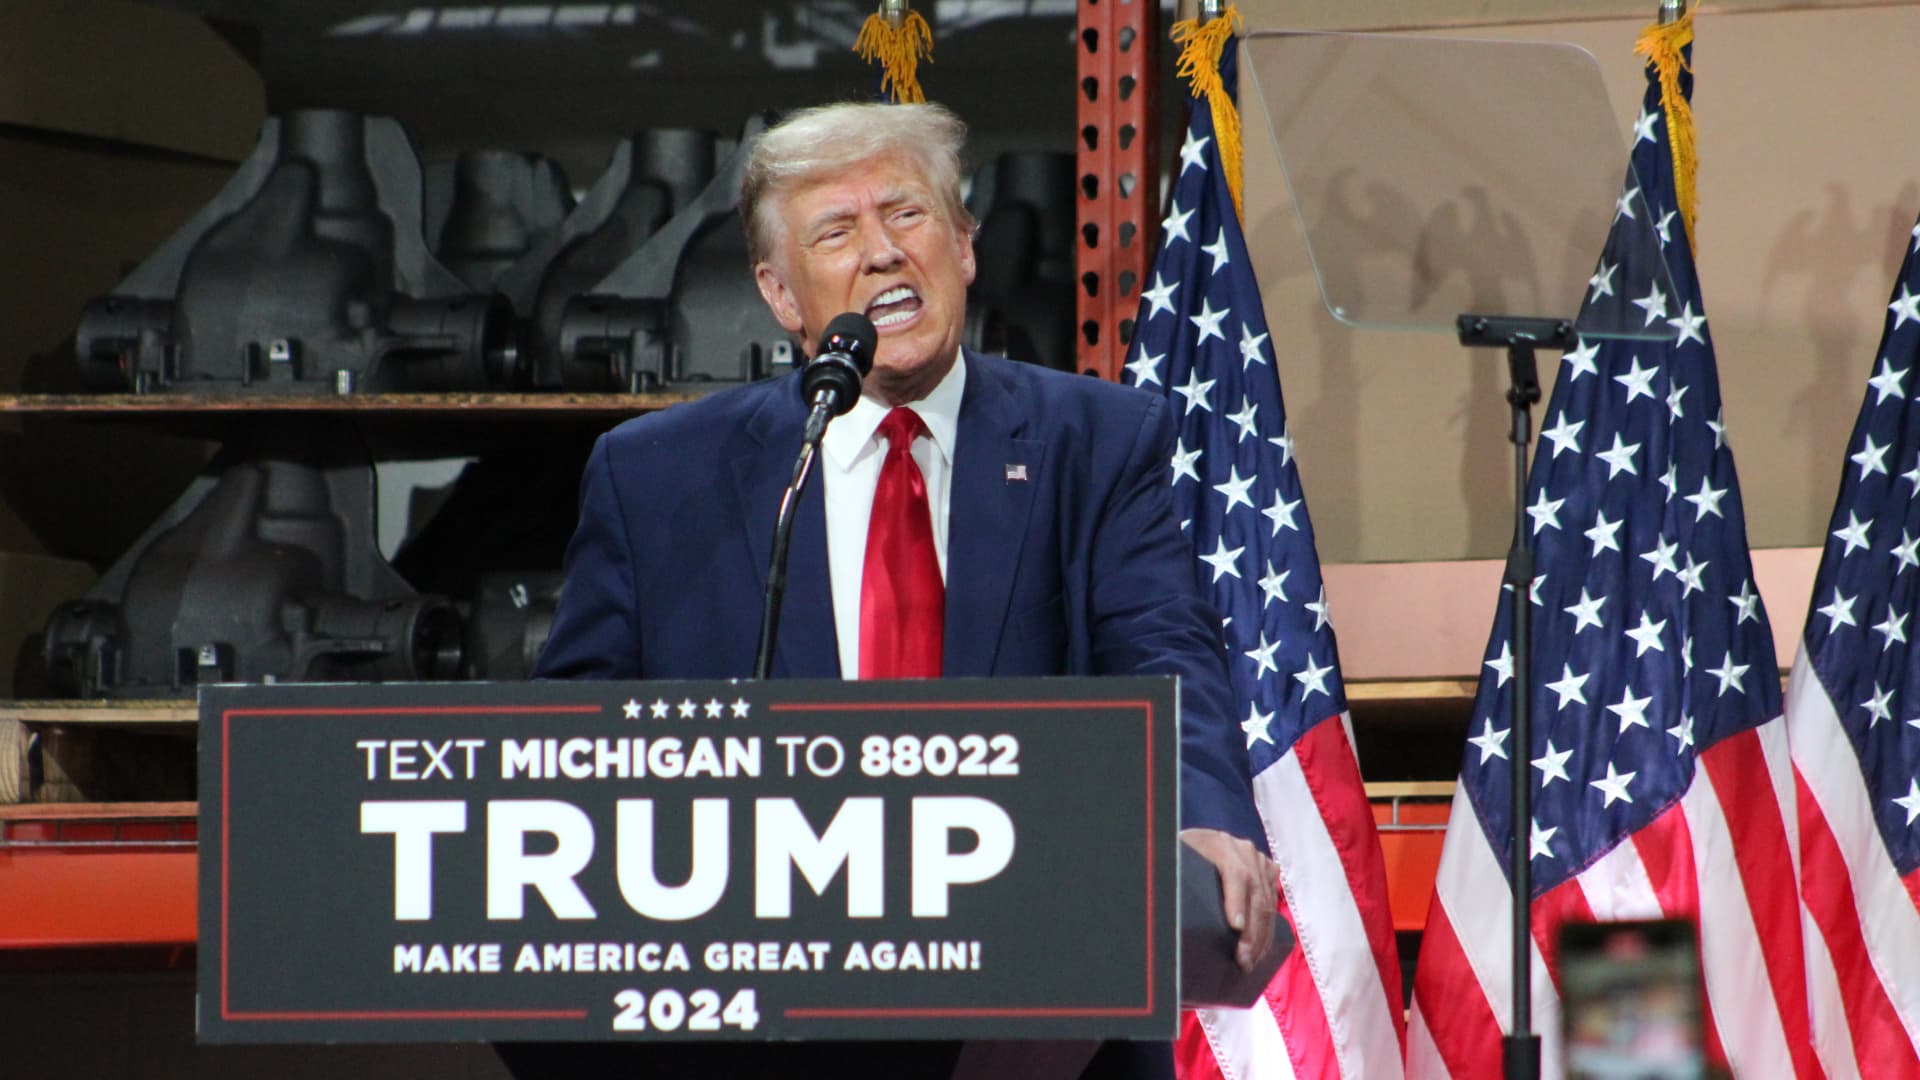 Trump seeks UAW endorsement while criticizing EVs, Biden in Michigan